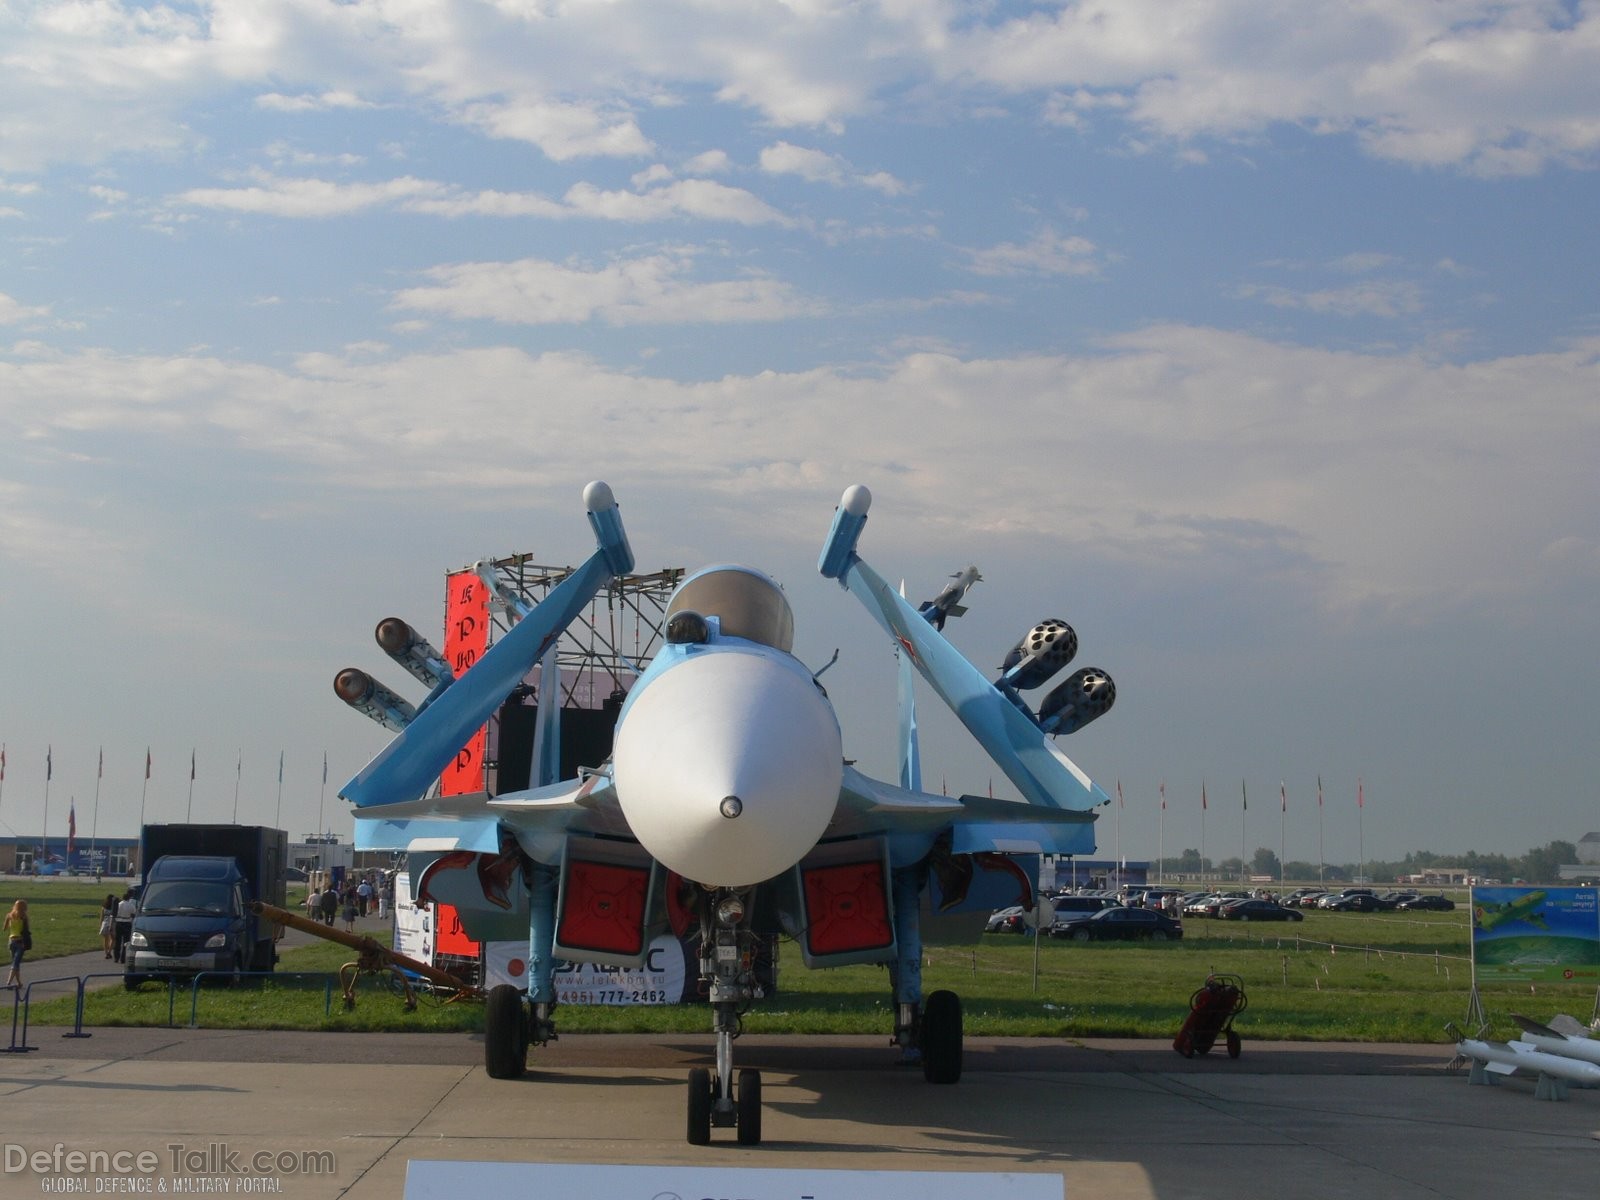 Su-34 - MAKS 2007 Air Show